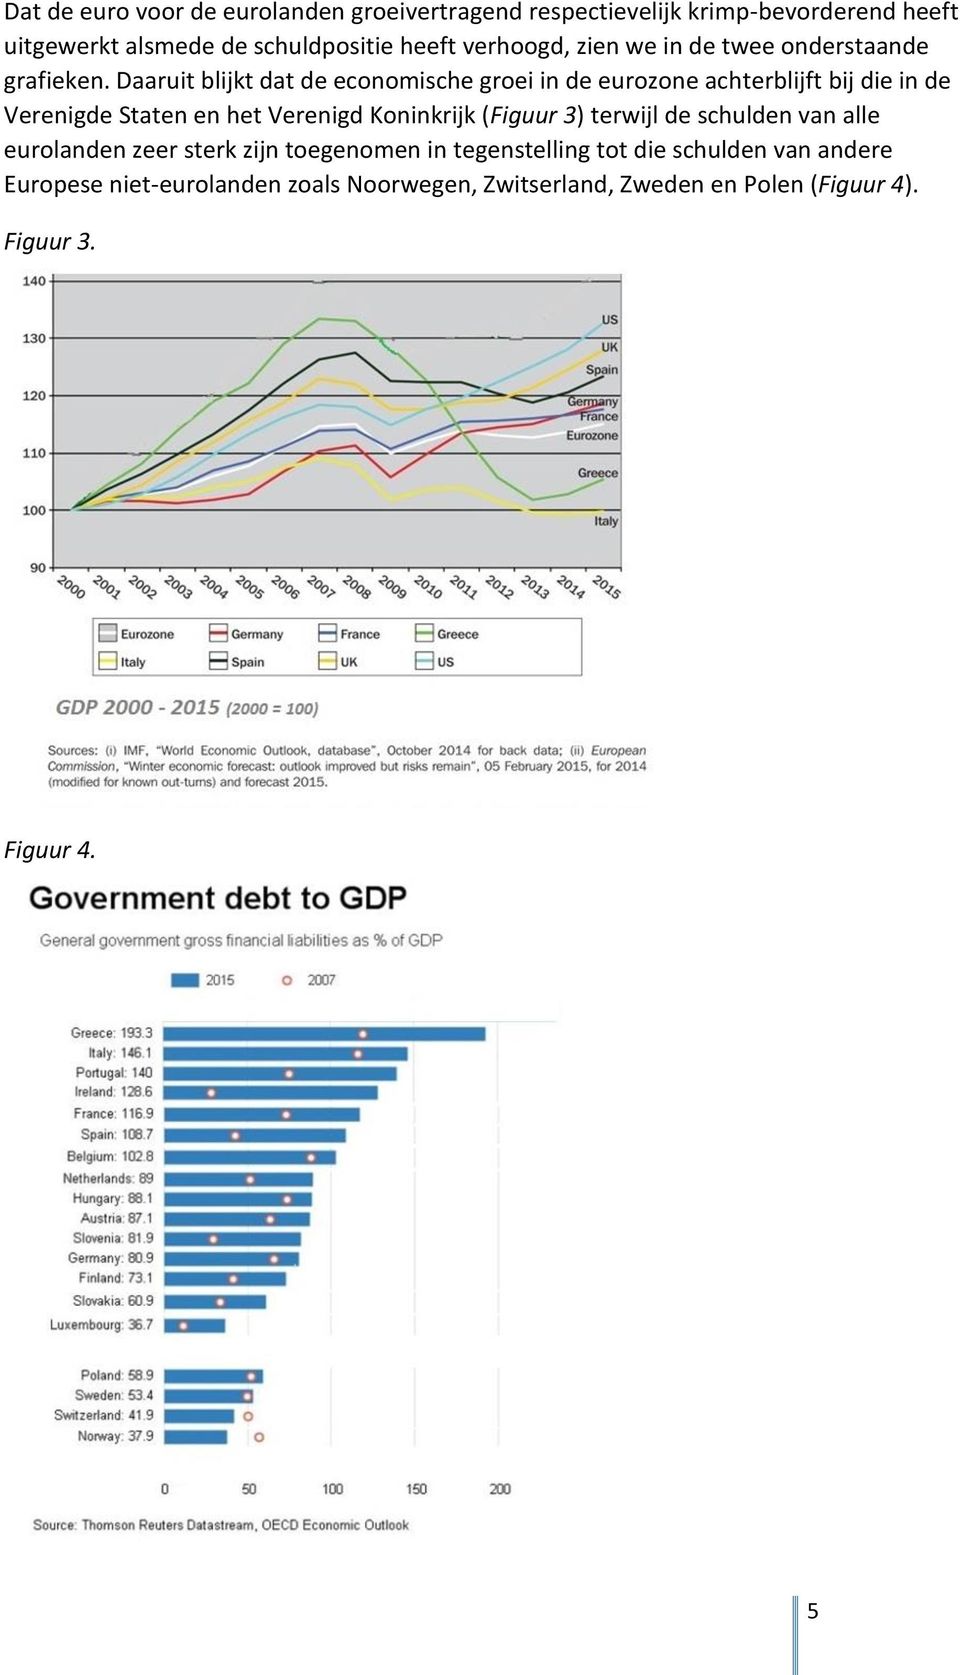 Daaruit blijkt dat de economische groei in de eurozone achterblijft bij die in de Verenigde Staten en het Verenigd Koninkrijk (Figuur